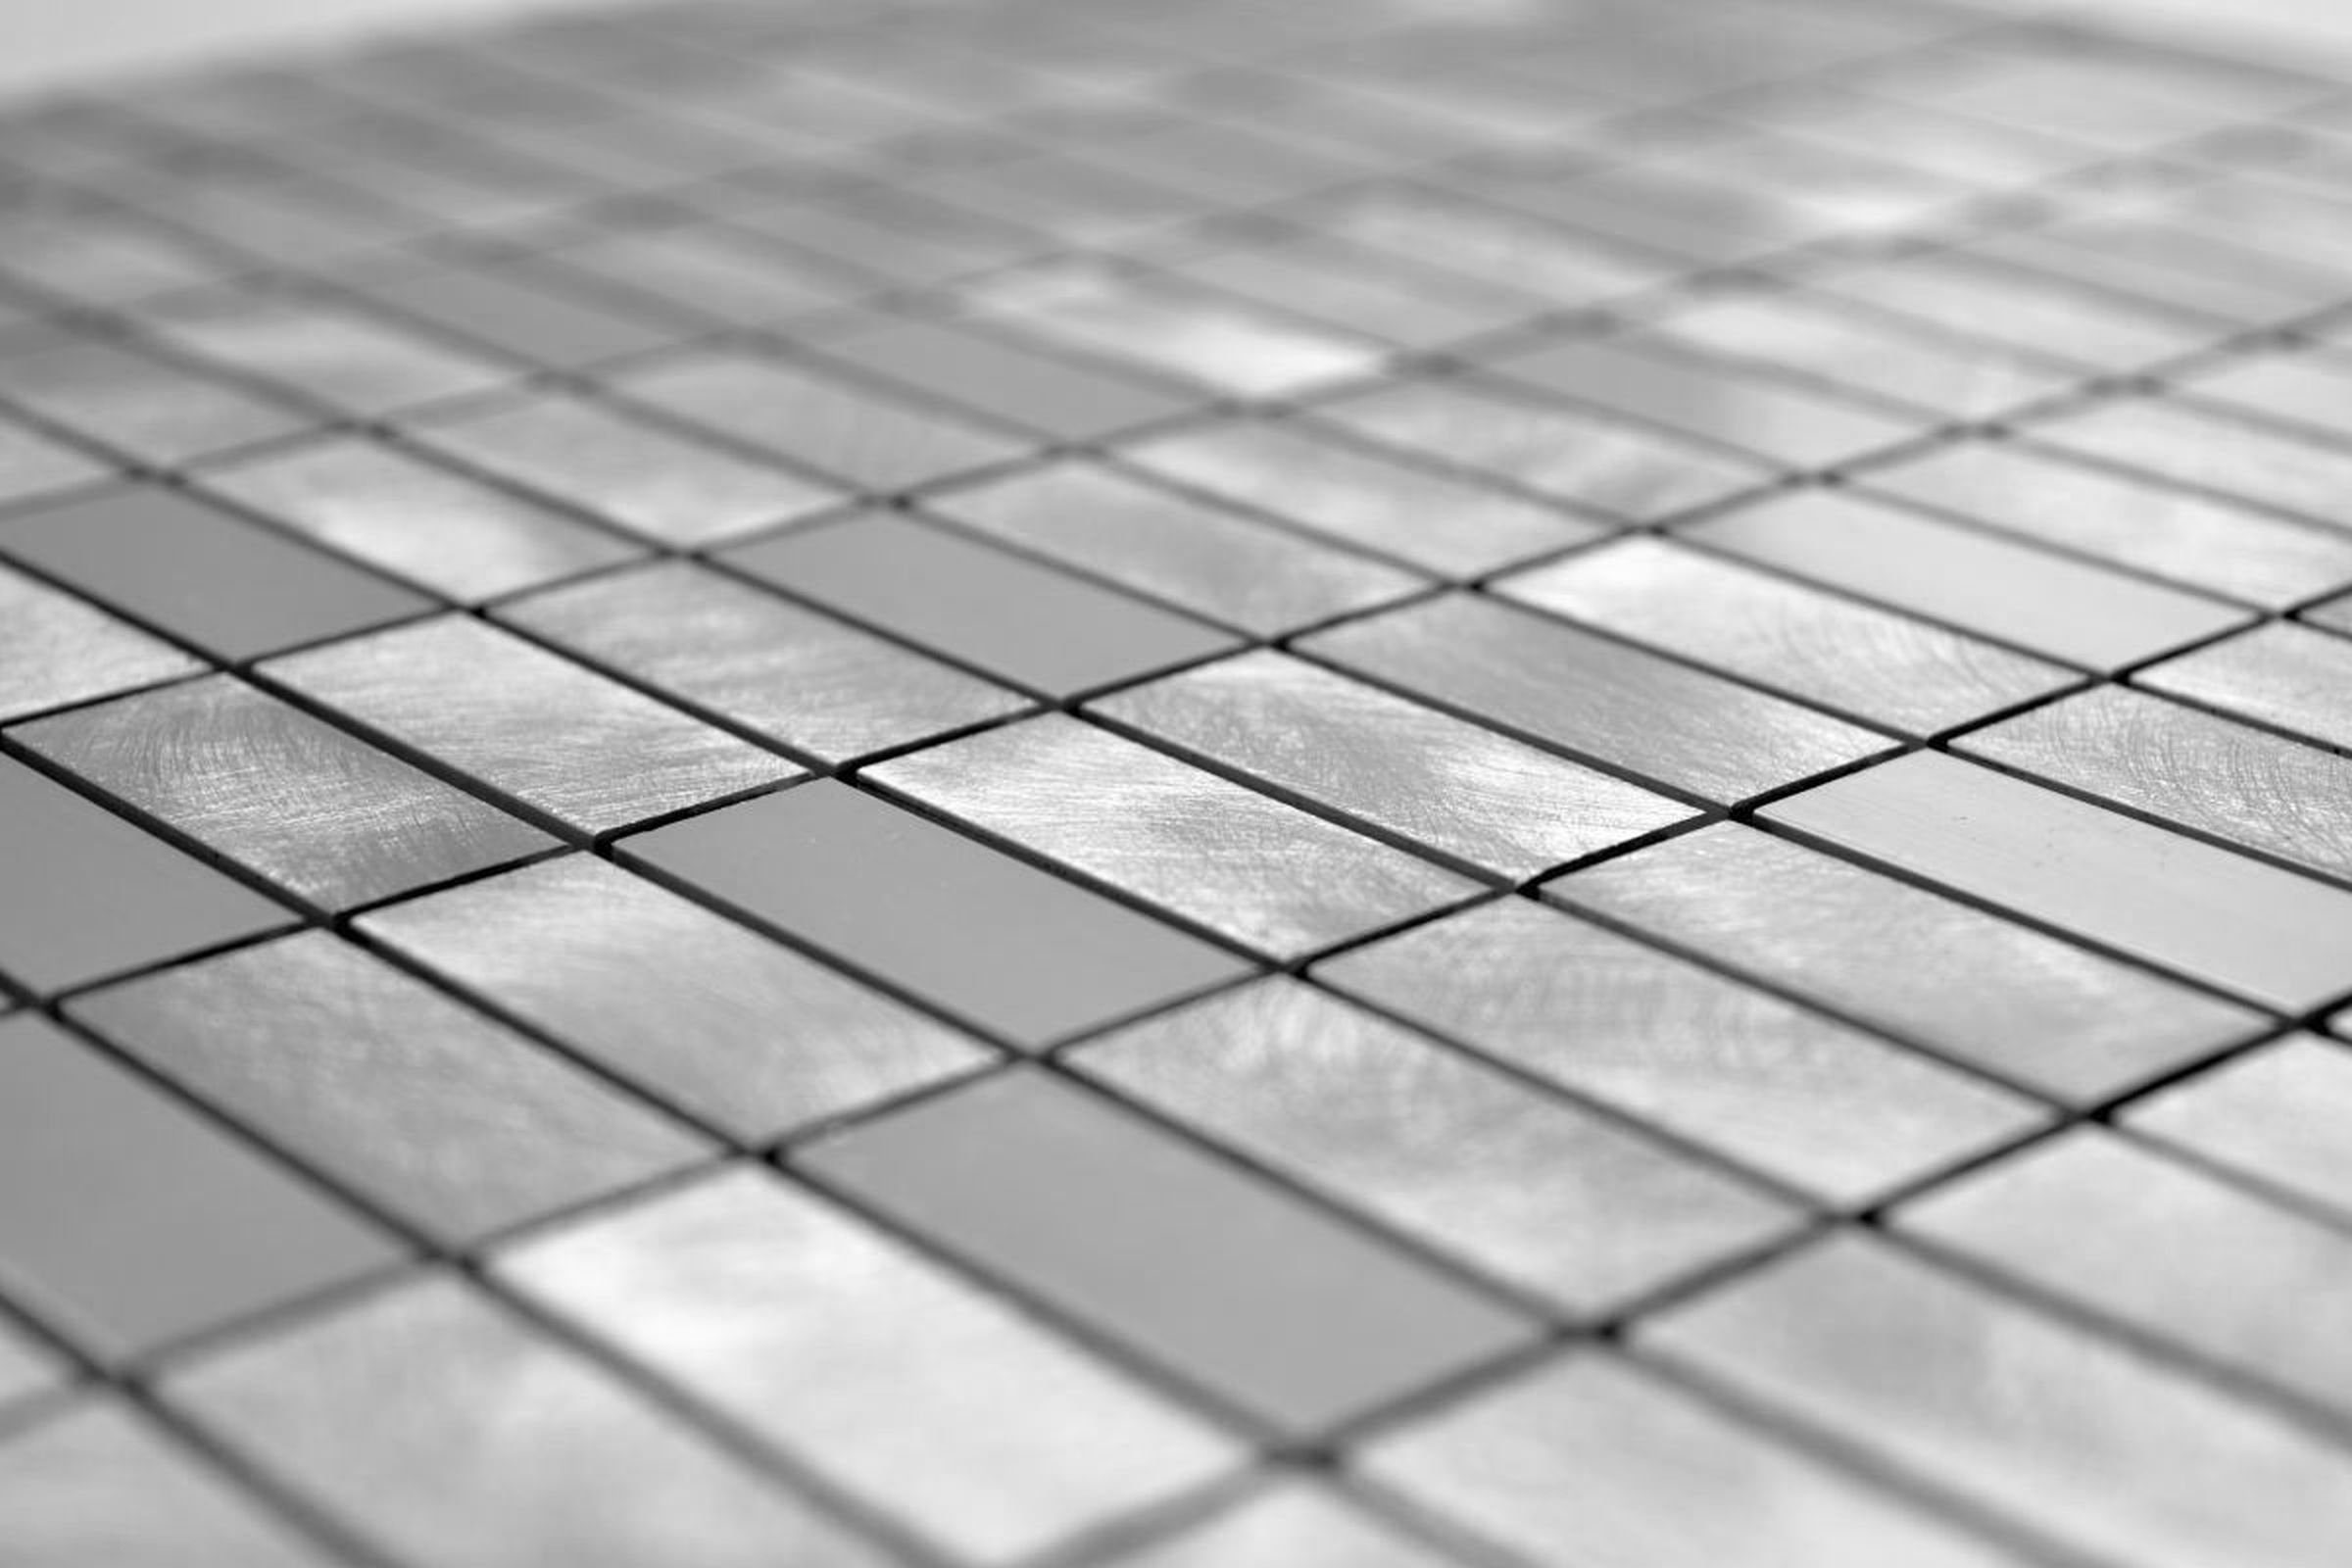 gebürstet Mosani Mosaik Küche poliert Mosaikfliesen Aluminium Fliese silber